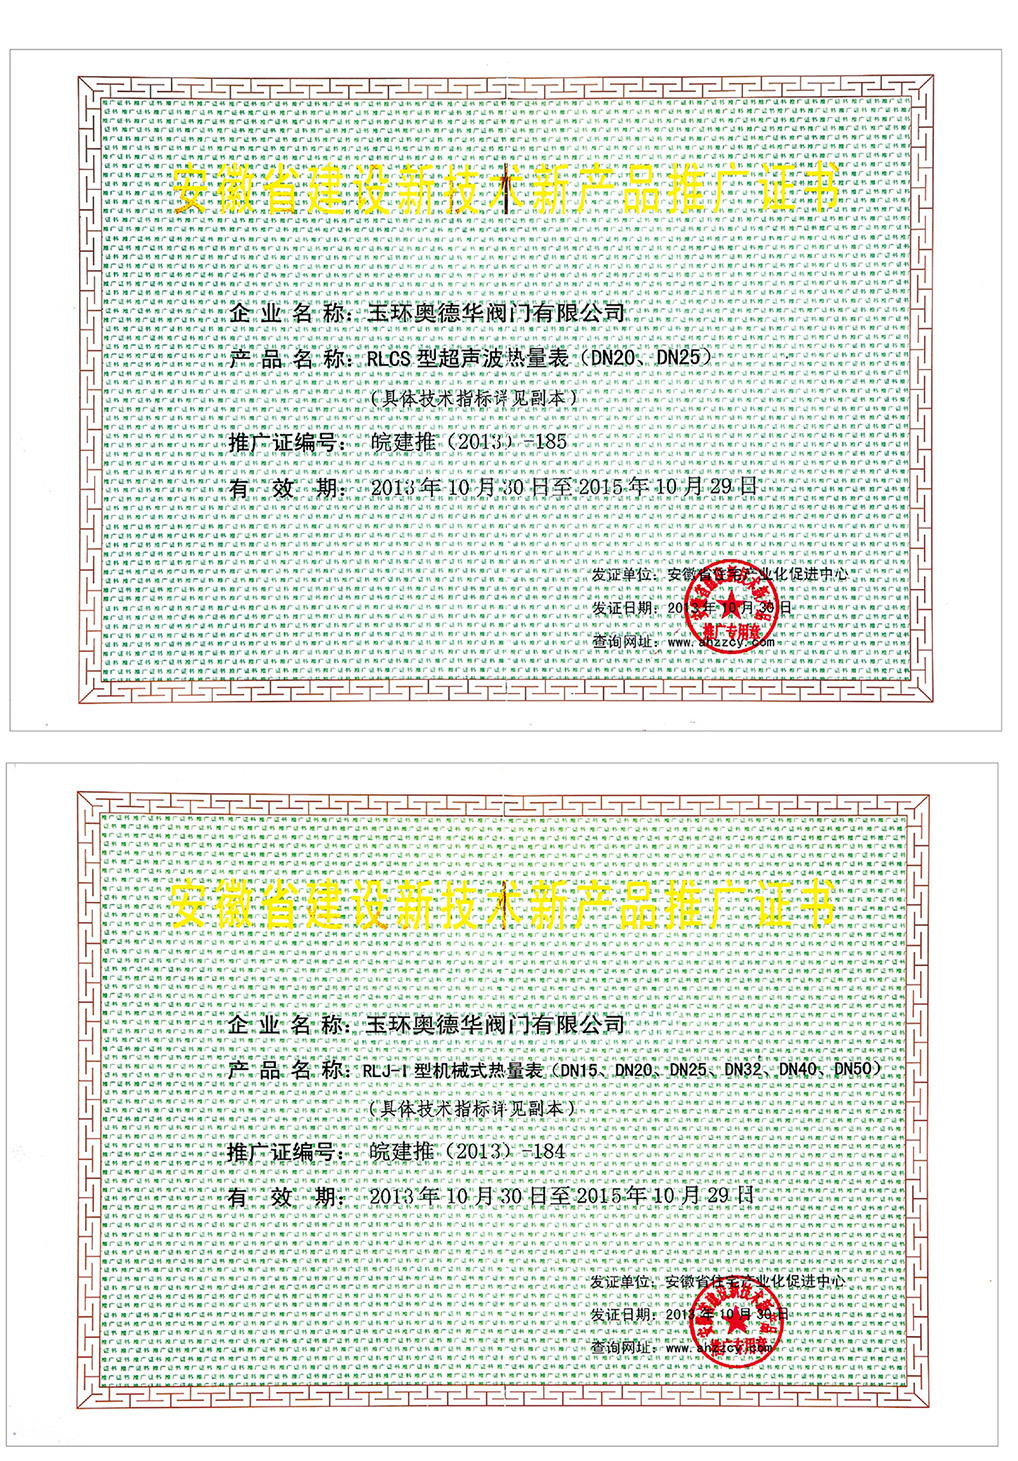 Сертификат продвижения новой продукции строительной техники провинции Аньхой